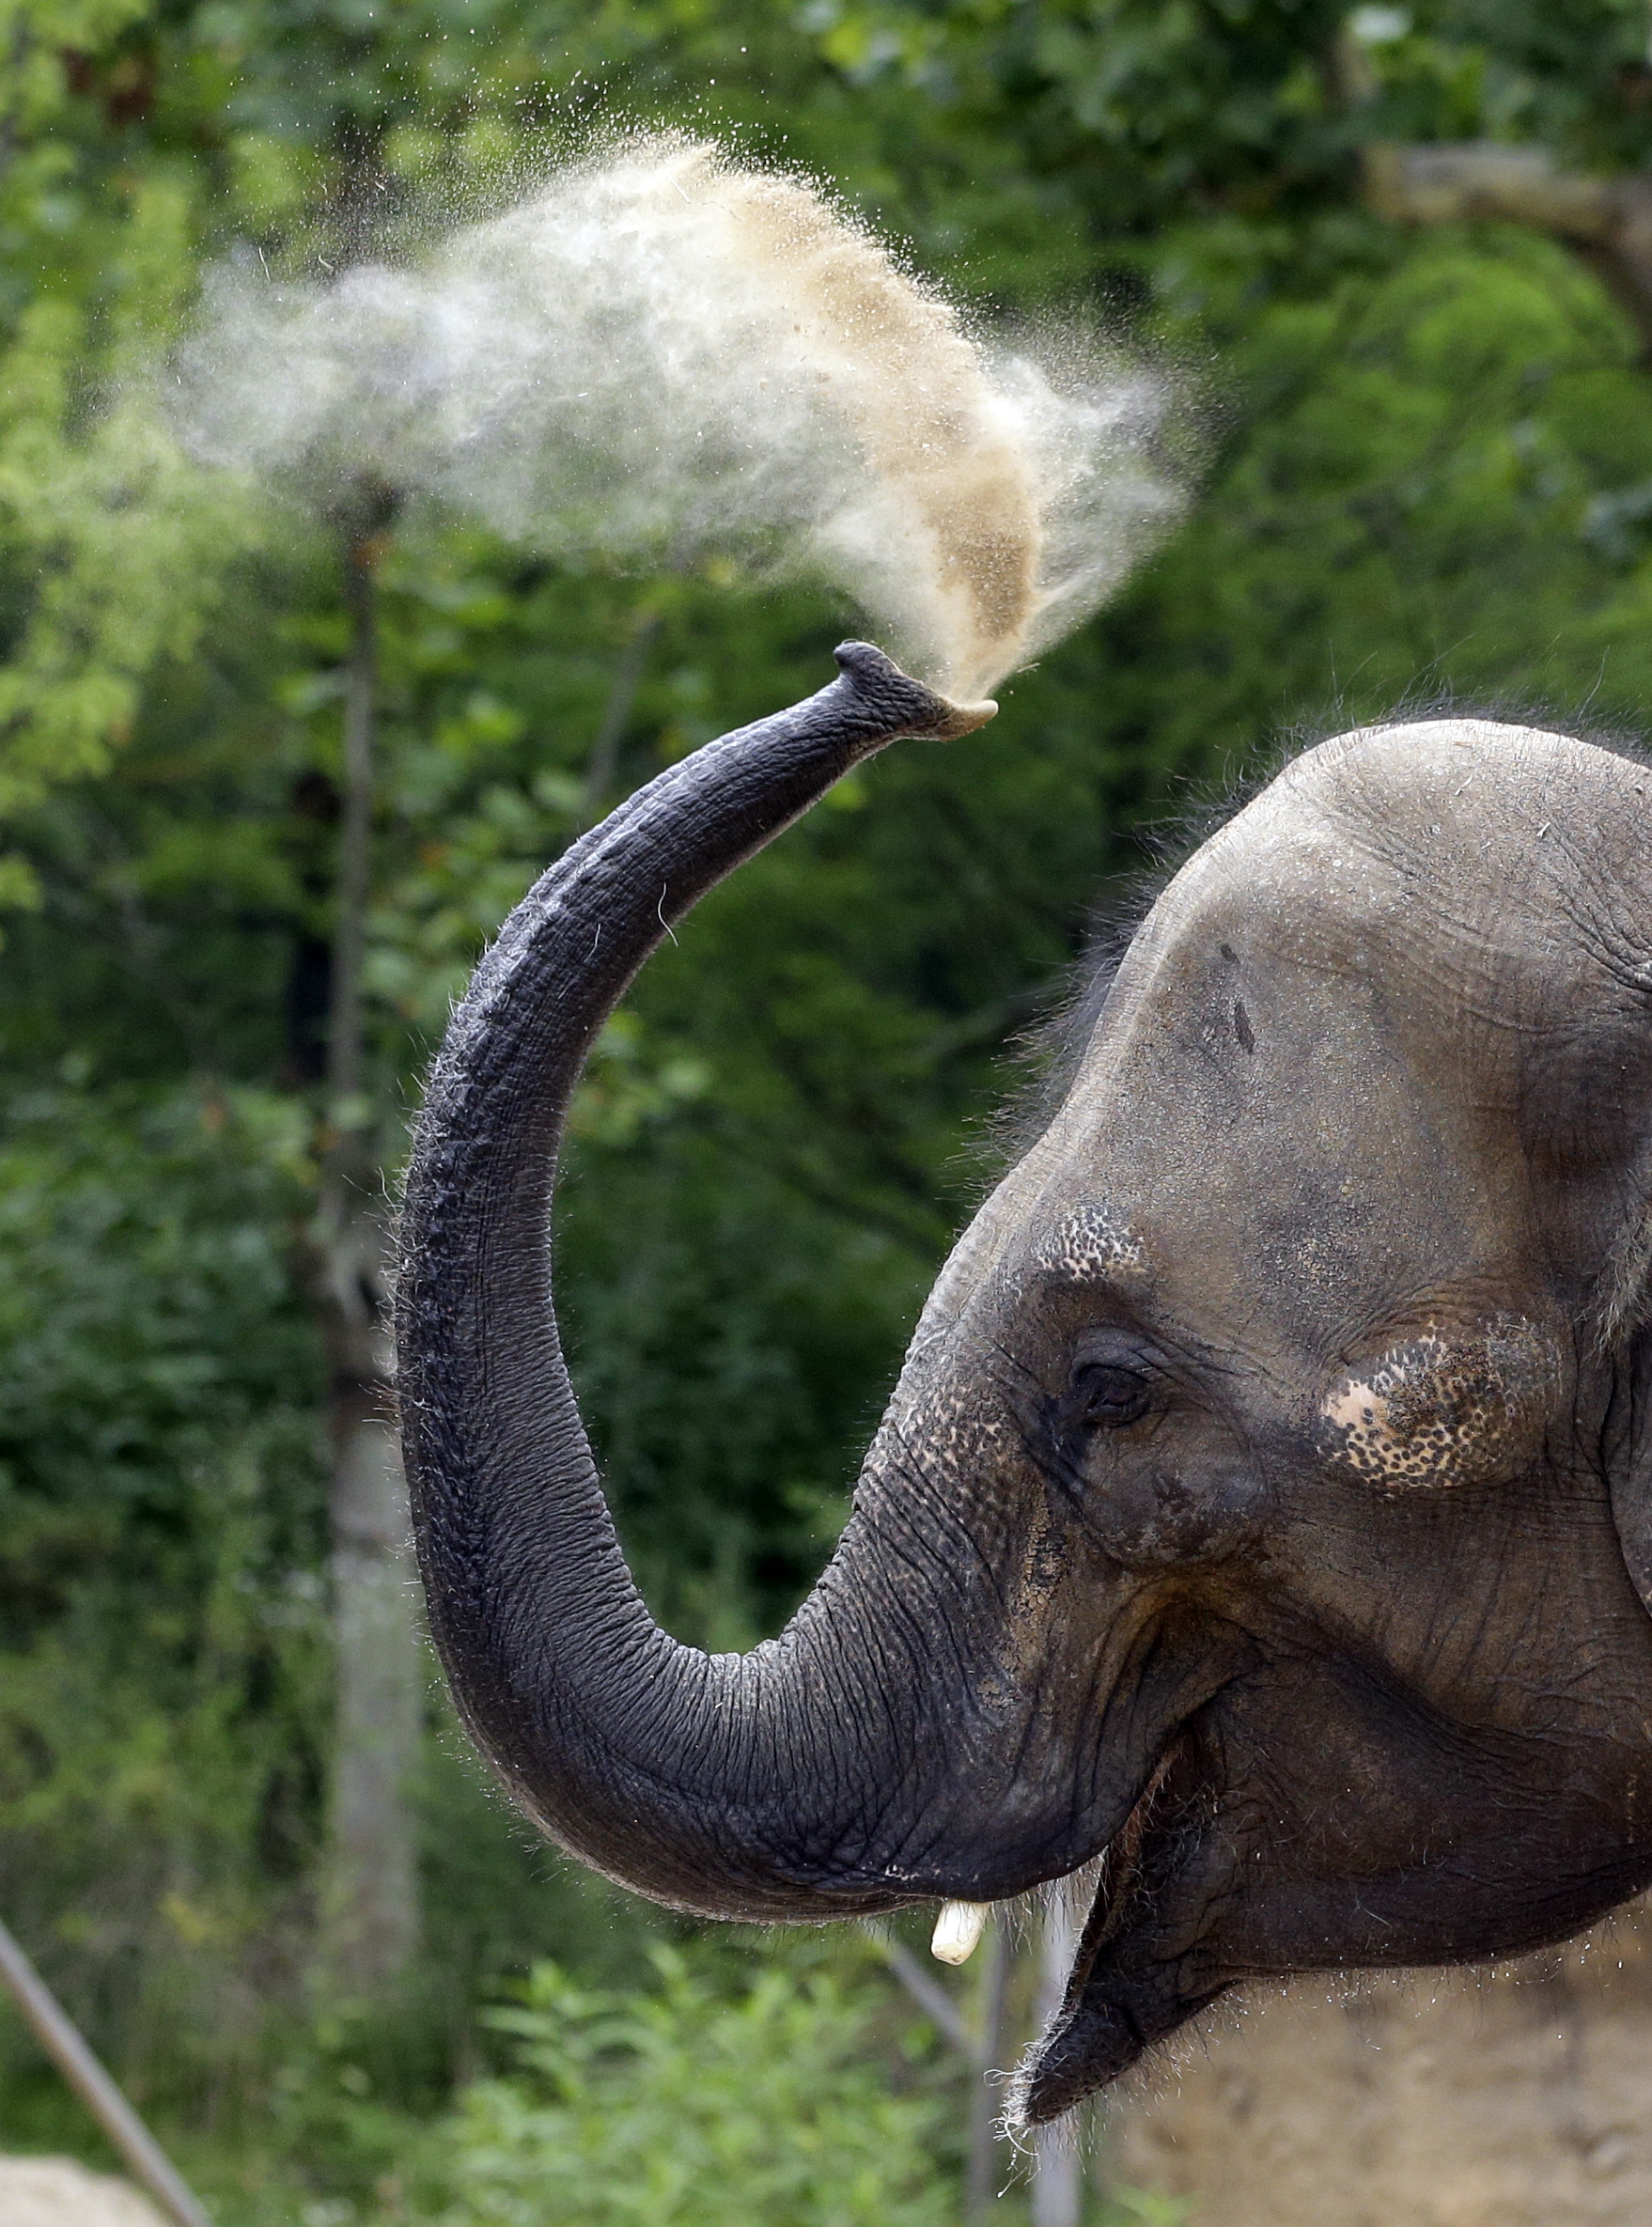 Ο ελέφαντας διαθέτει τελικά την καλύτερη όσφρηση μεταξύ των θηλαστικών